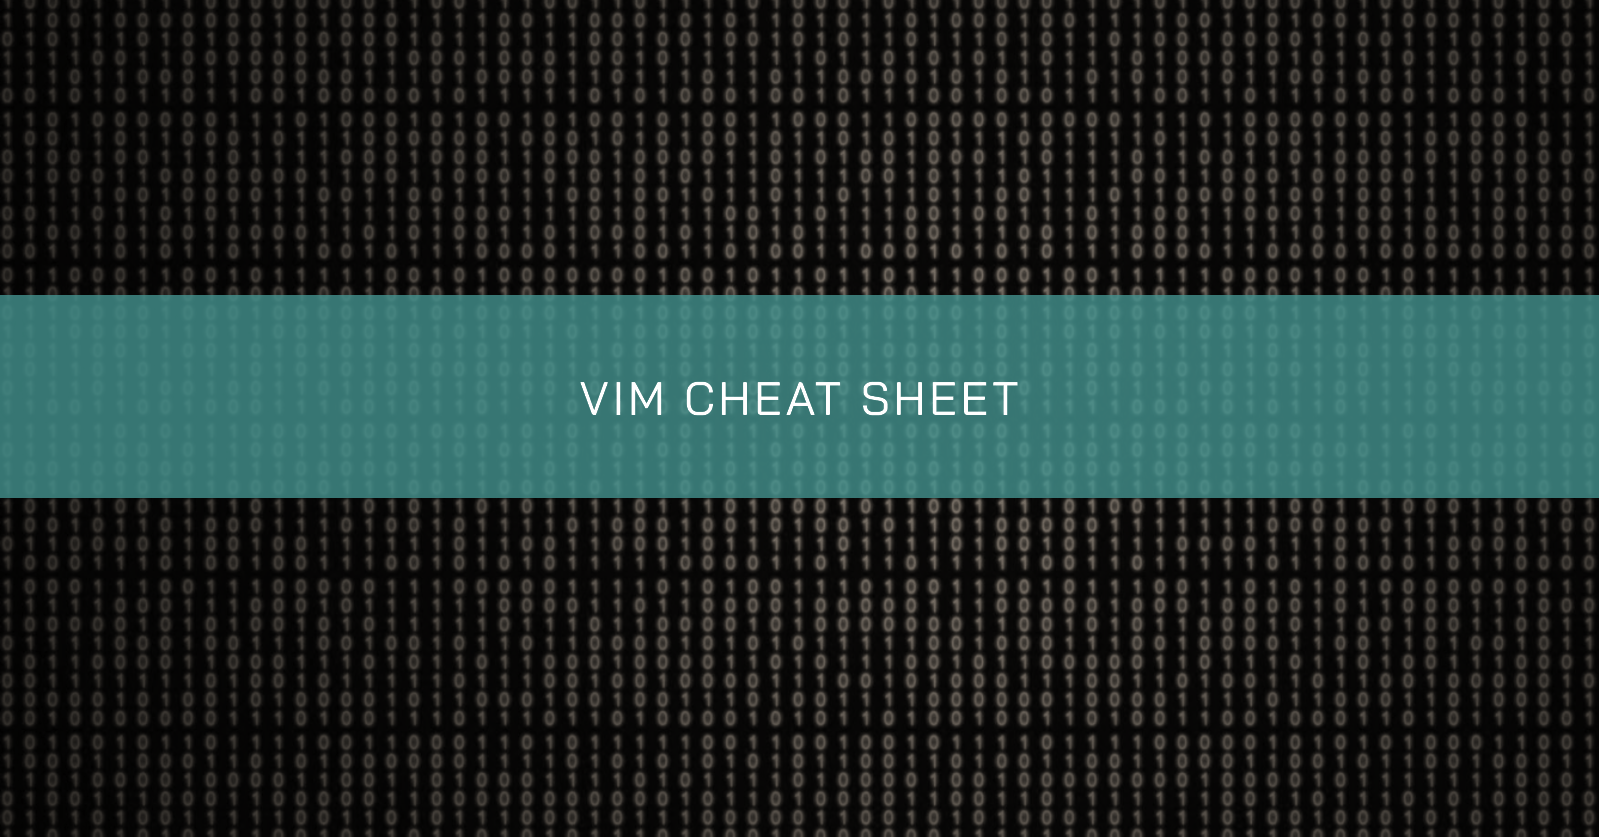 /vim-cheat-sheet/banner.en.png